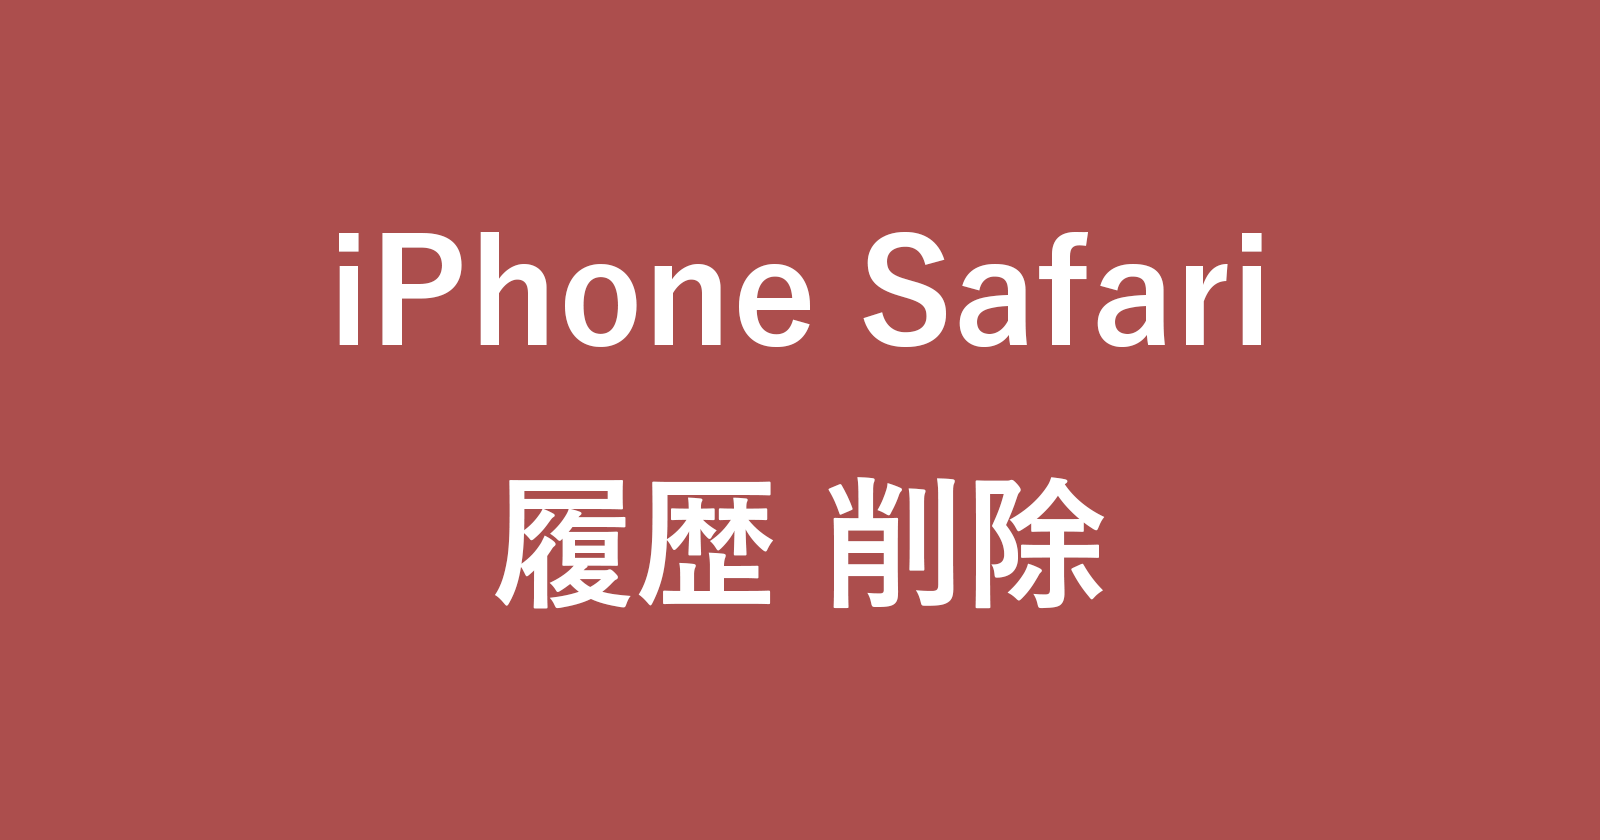 iphone safari delete history